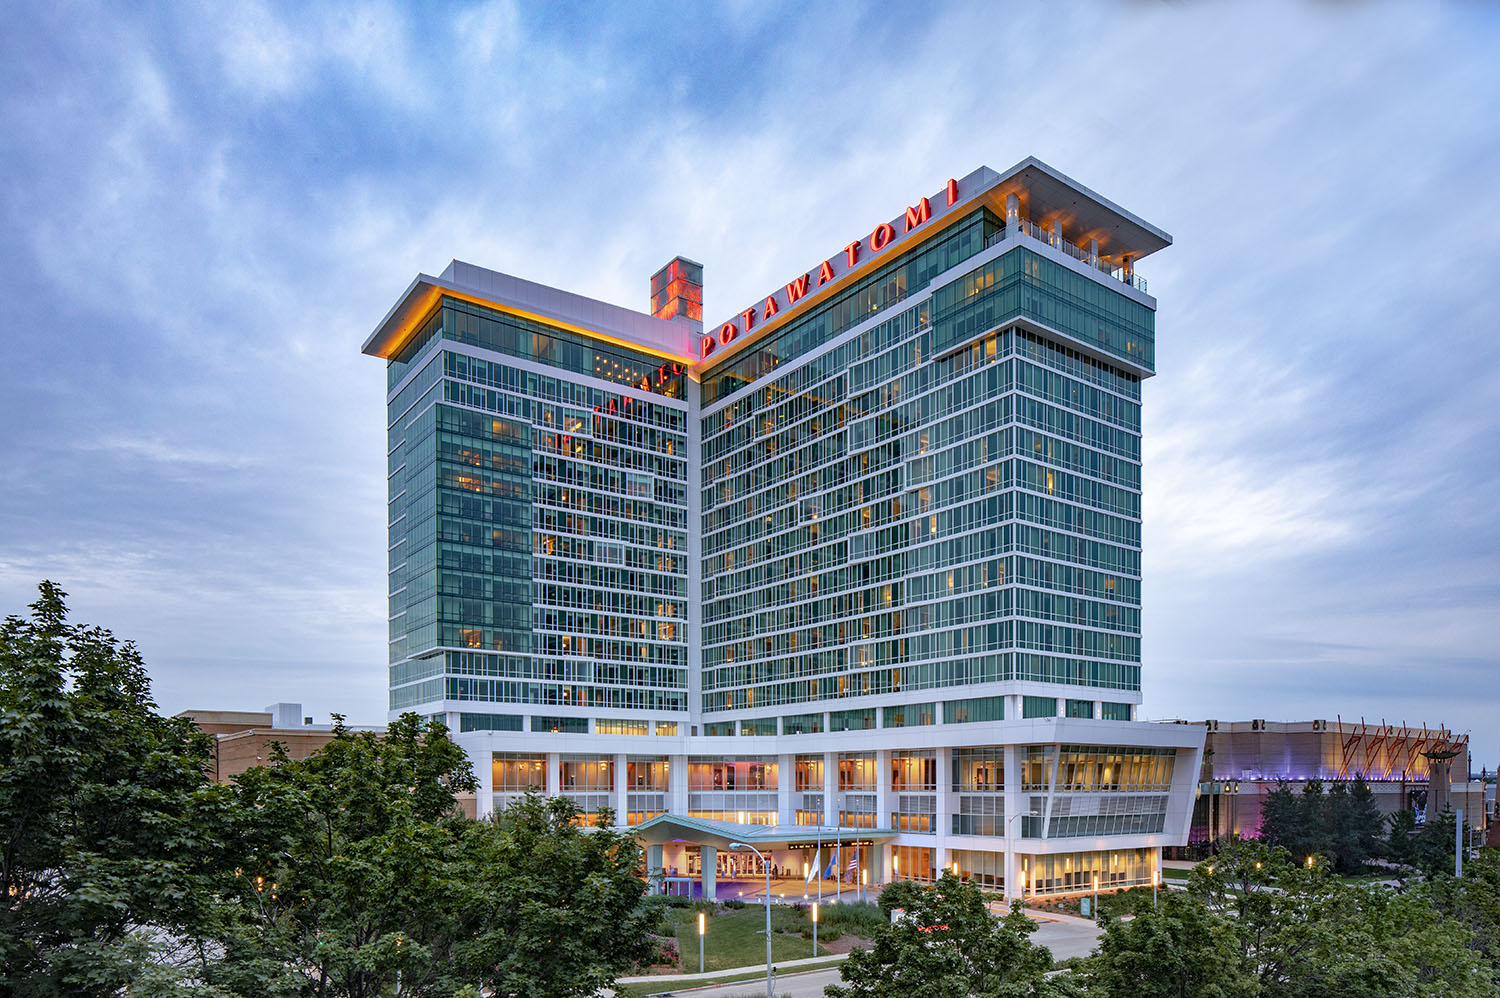 Potawatomi Hotel Expansion image 1